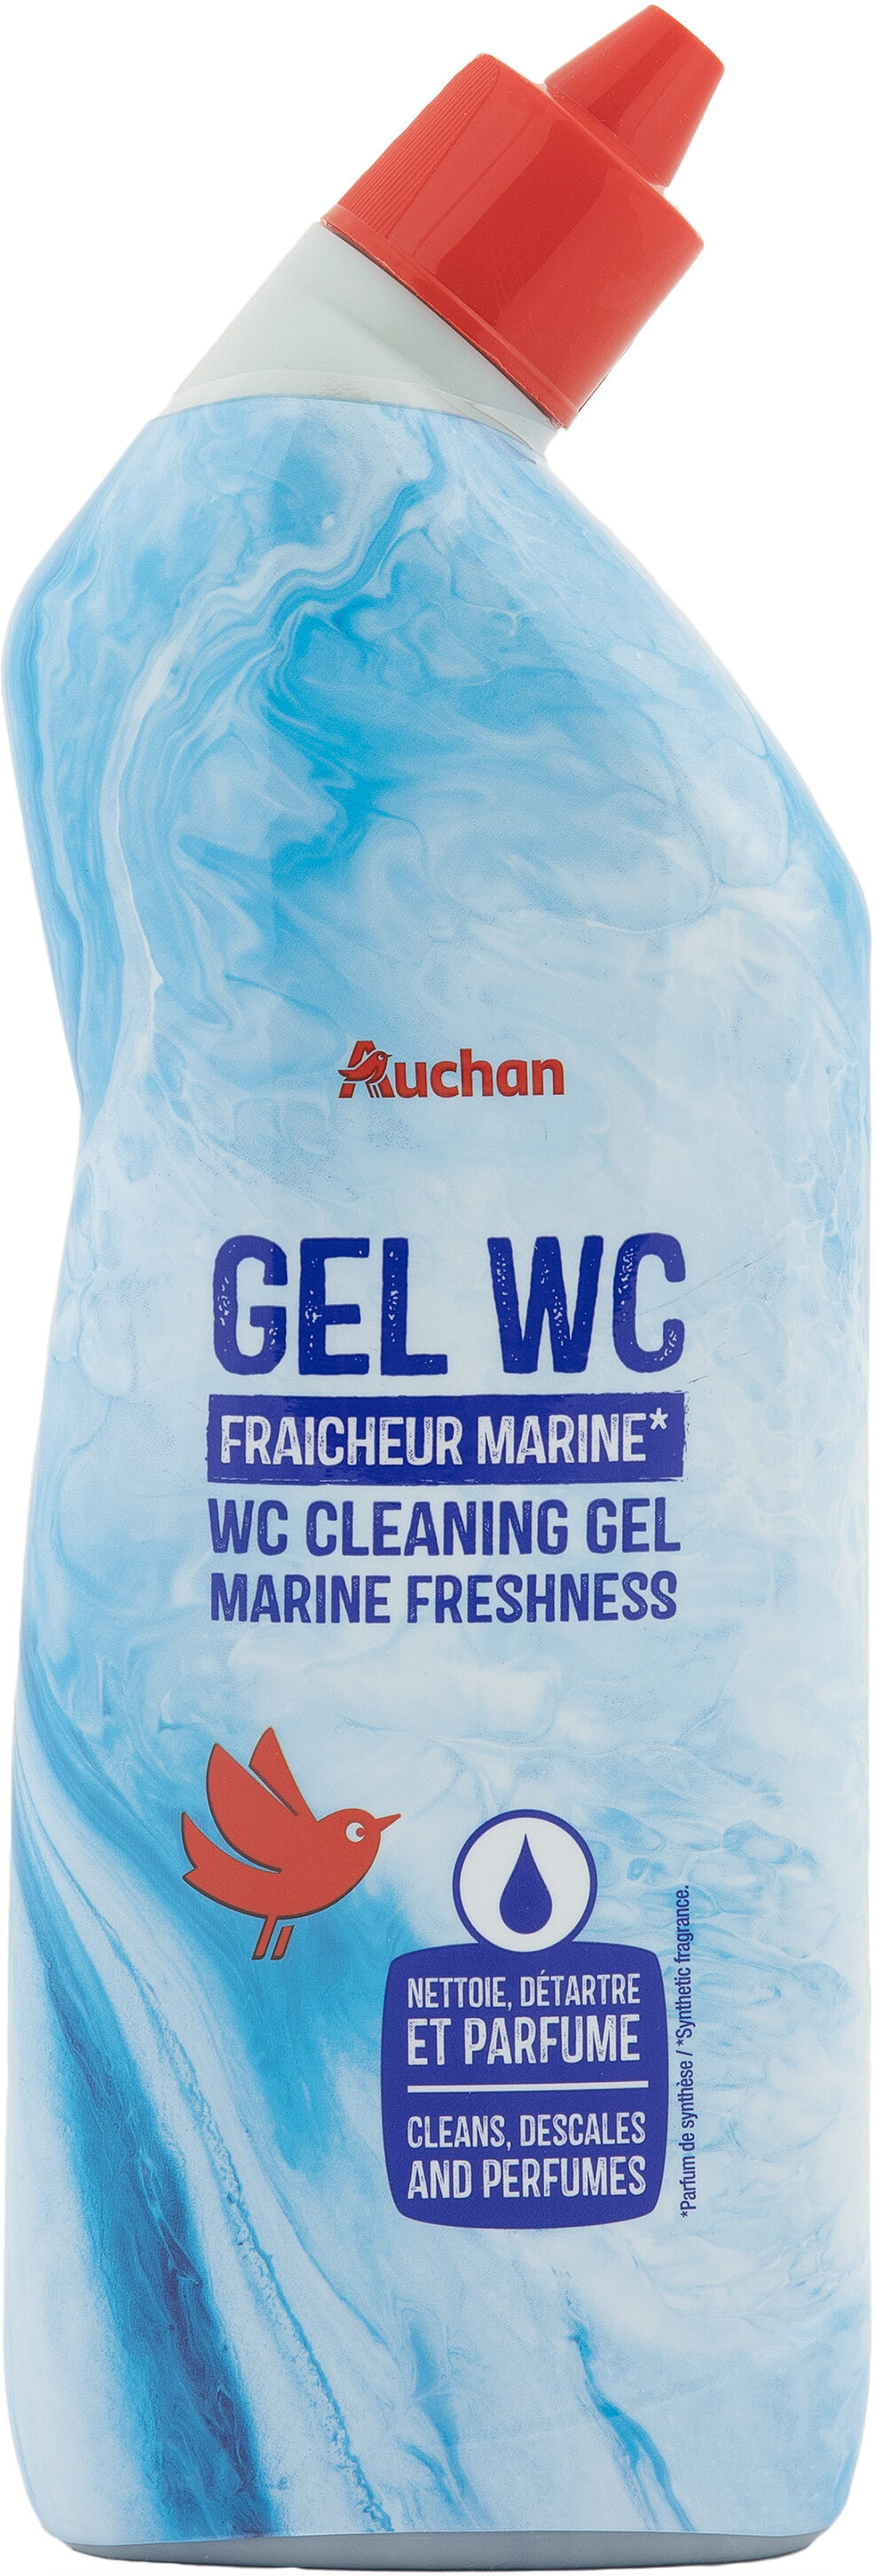 Gel WC Marine - Product - fr